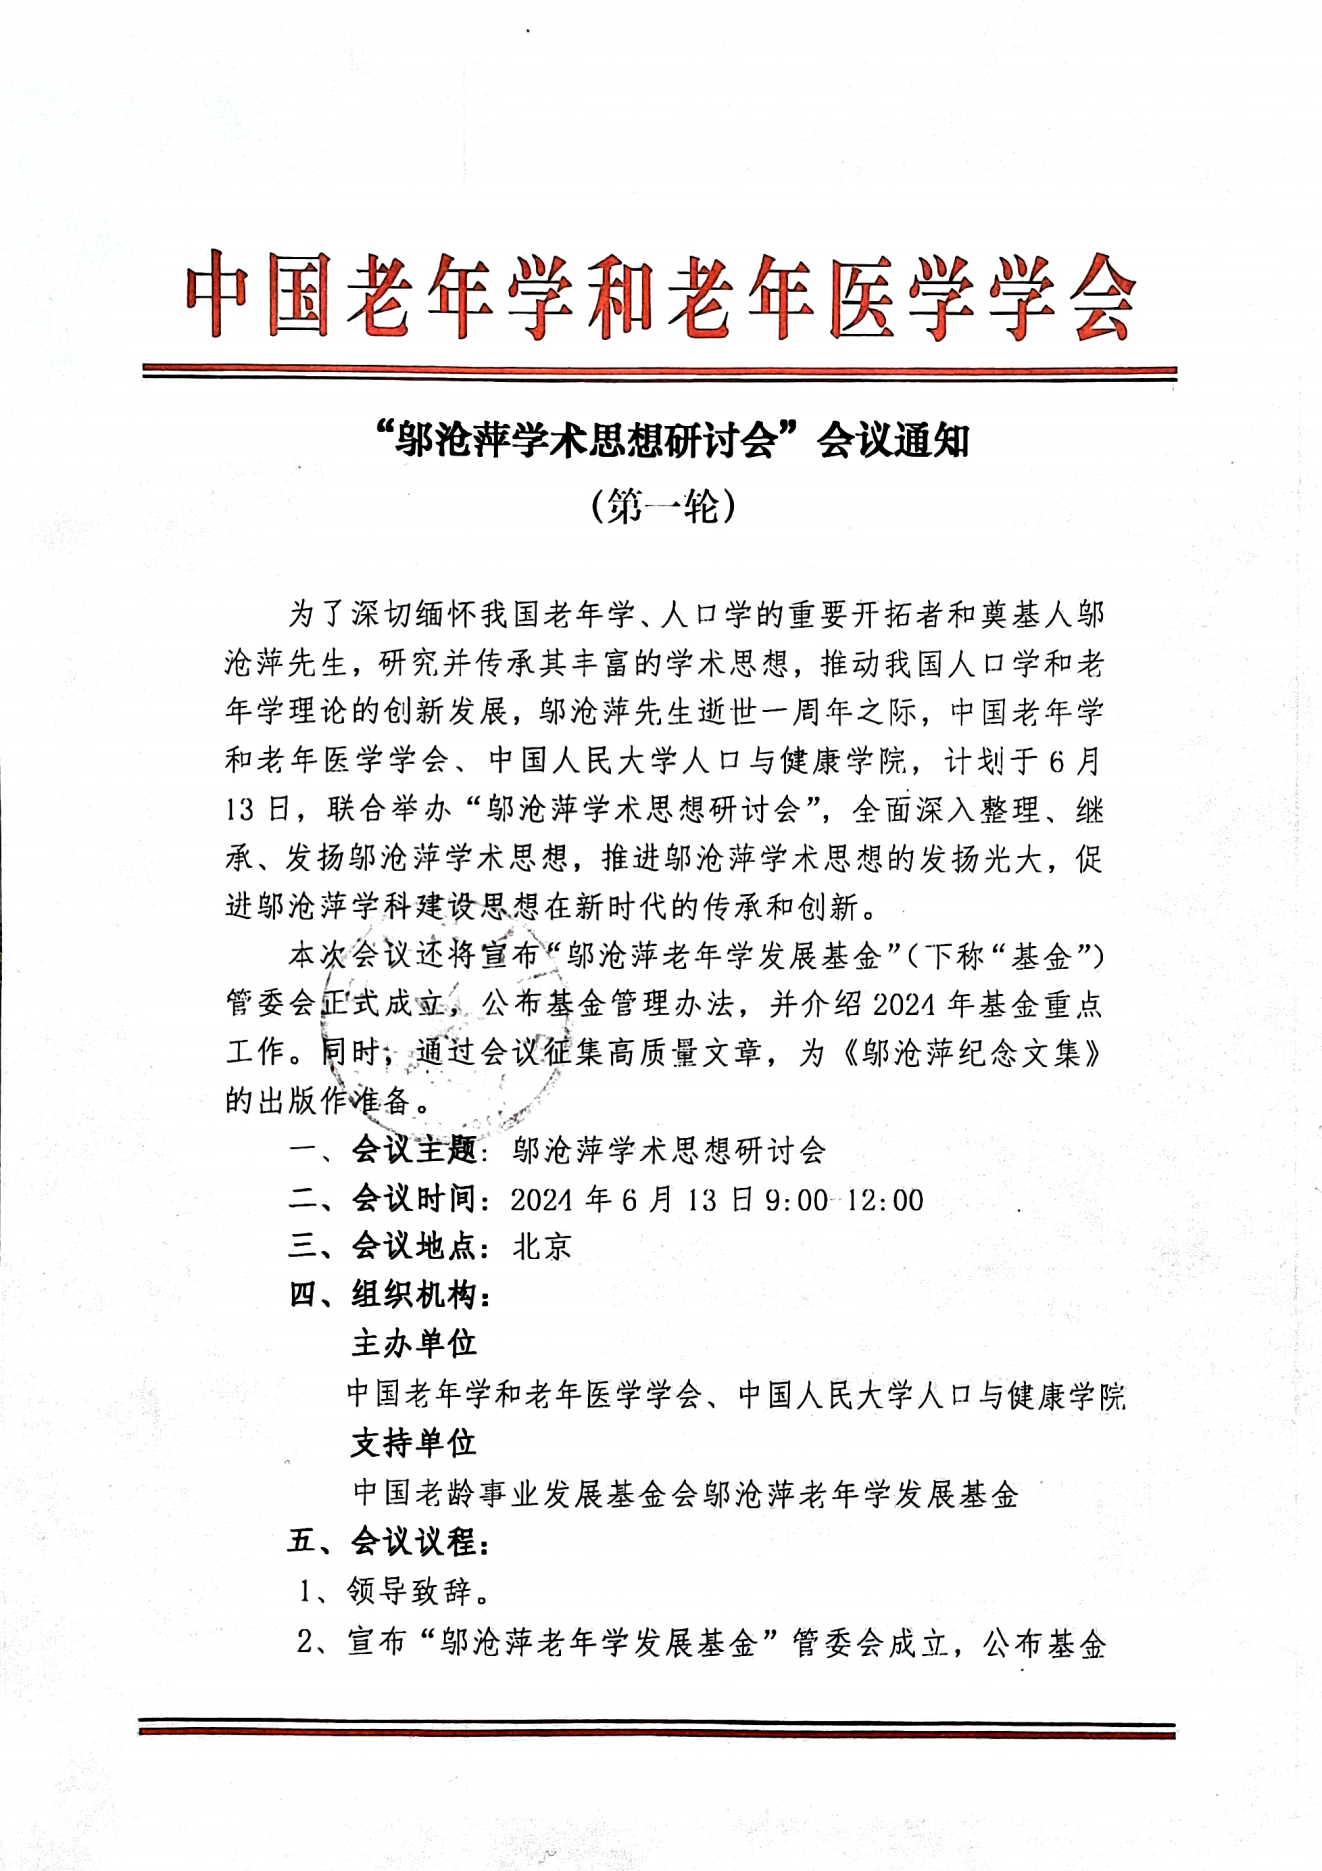 邬沧萍学术思想研讨会会议通知（第一轮）-盖章版(1)_00.png